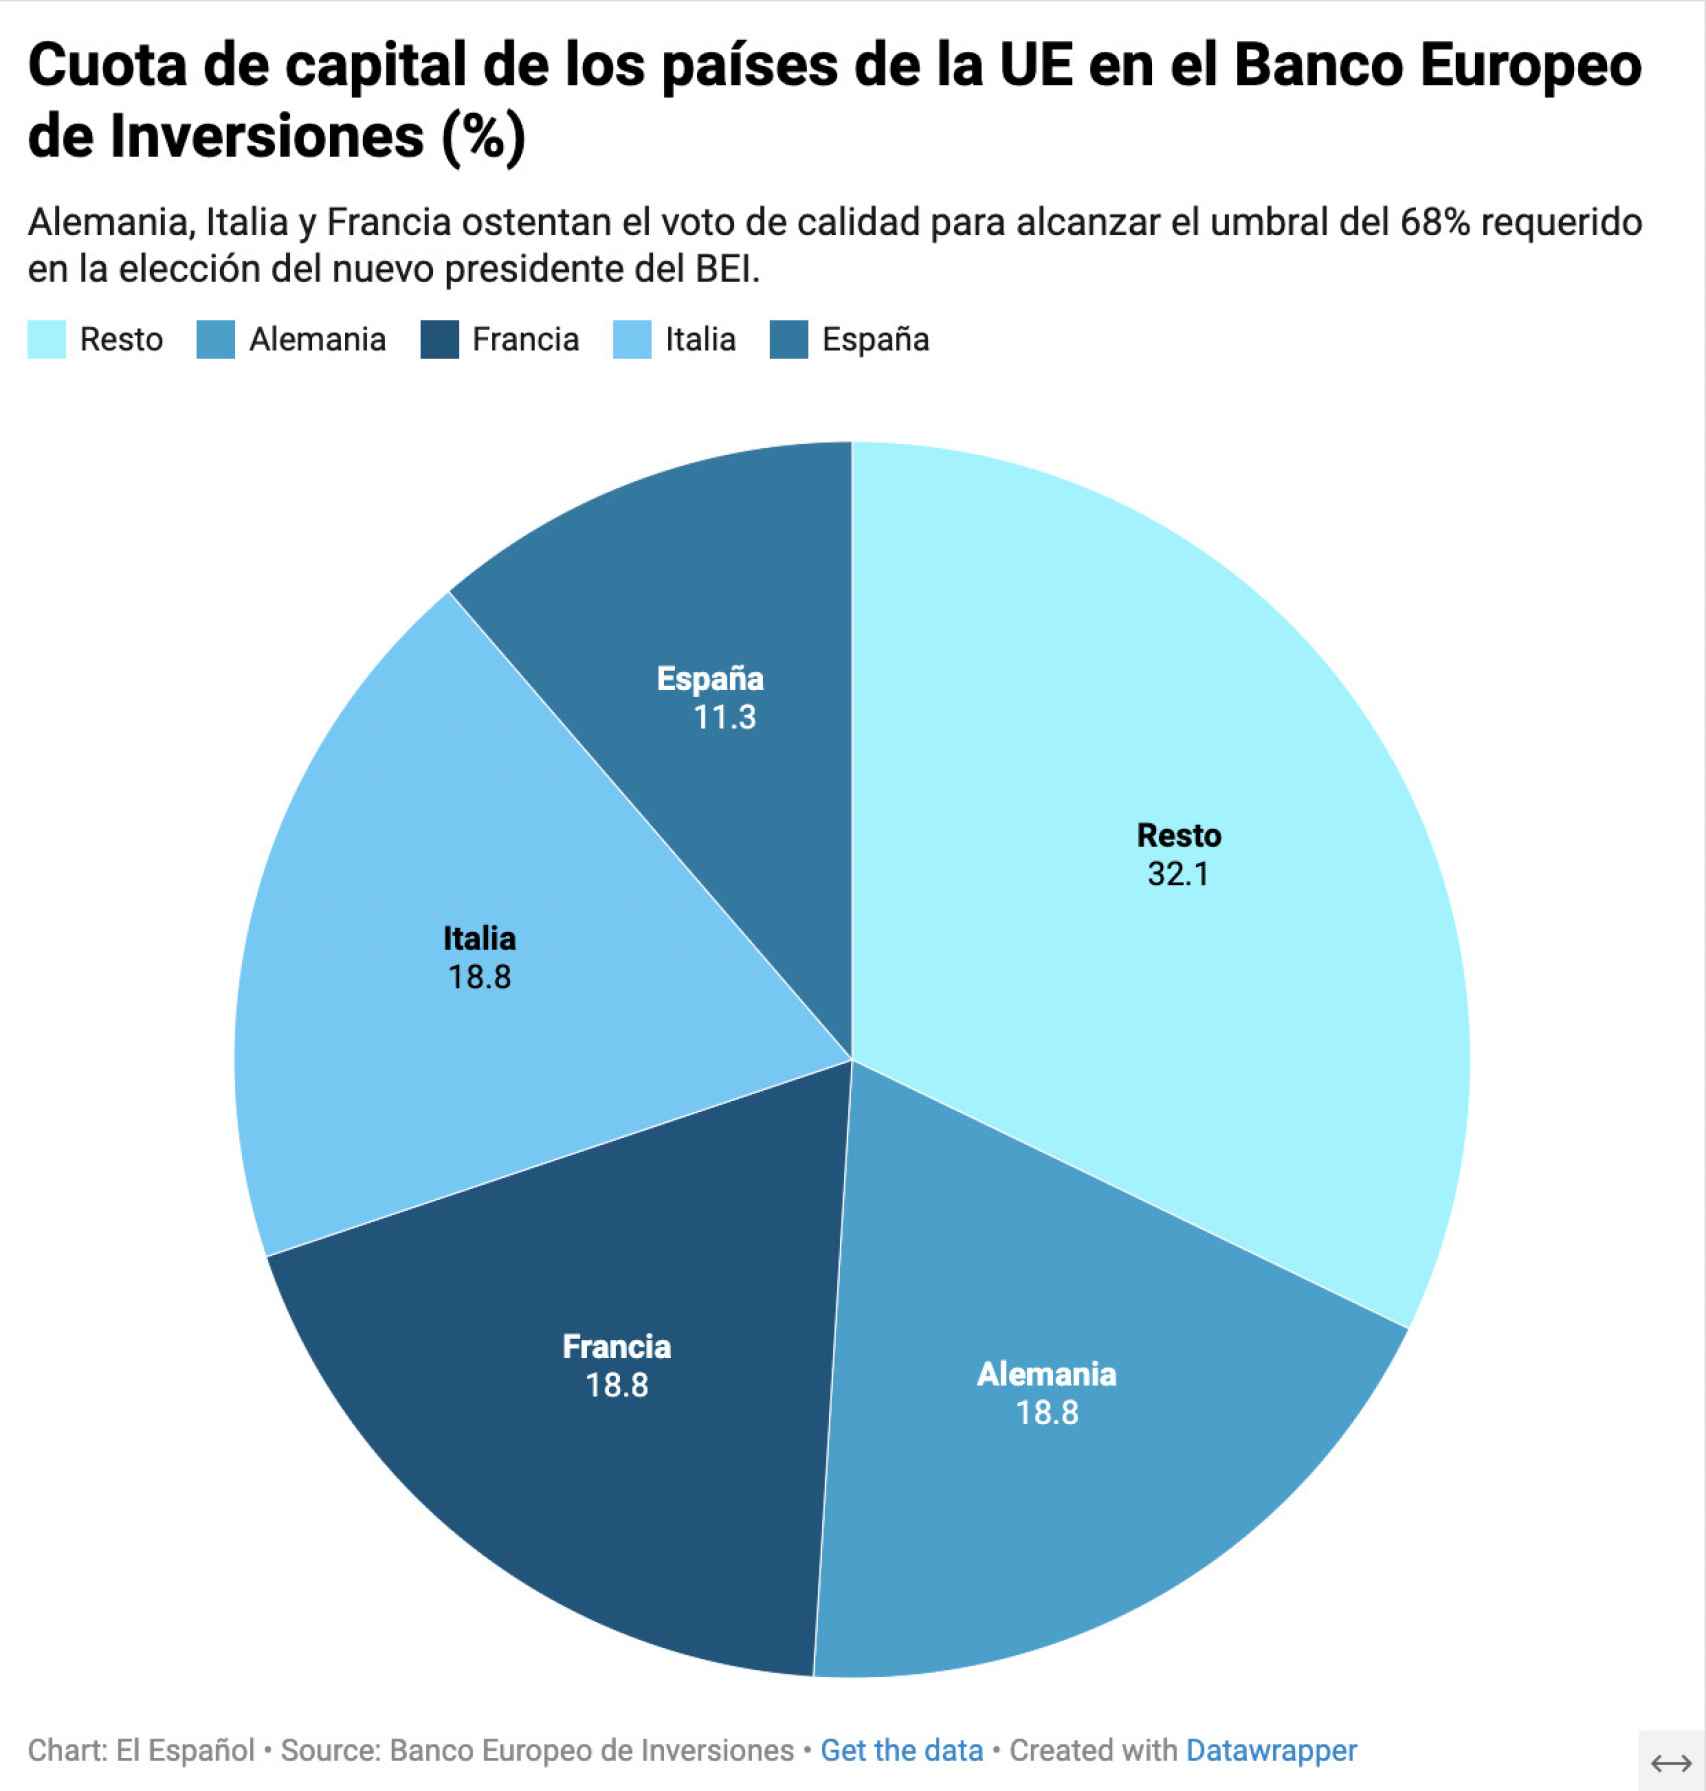 Cuota de capital de los países de la UE en el Banco Europeo de Inversiones